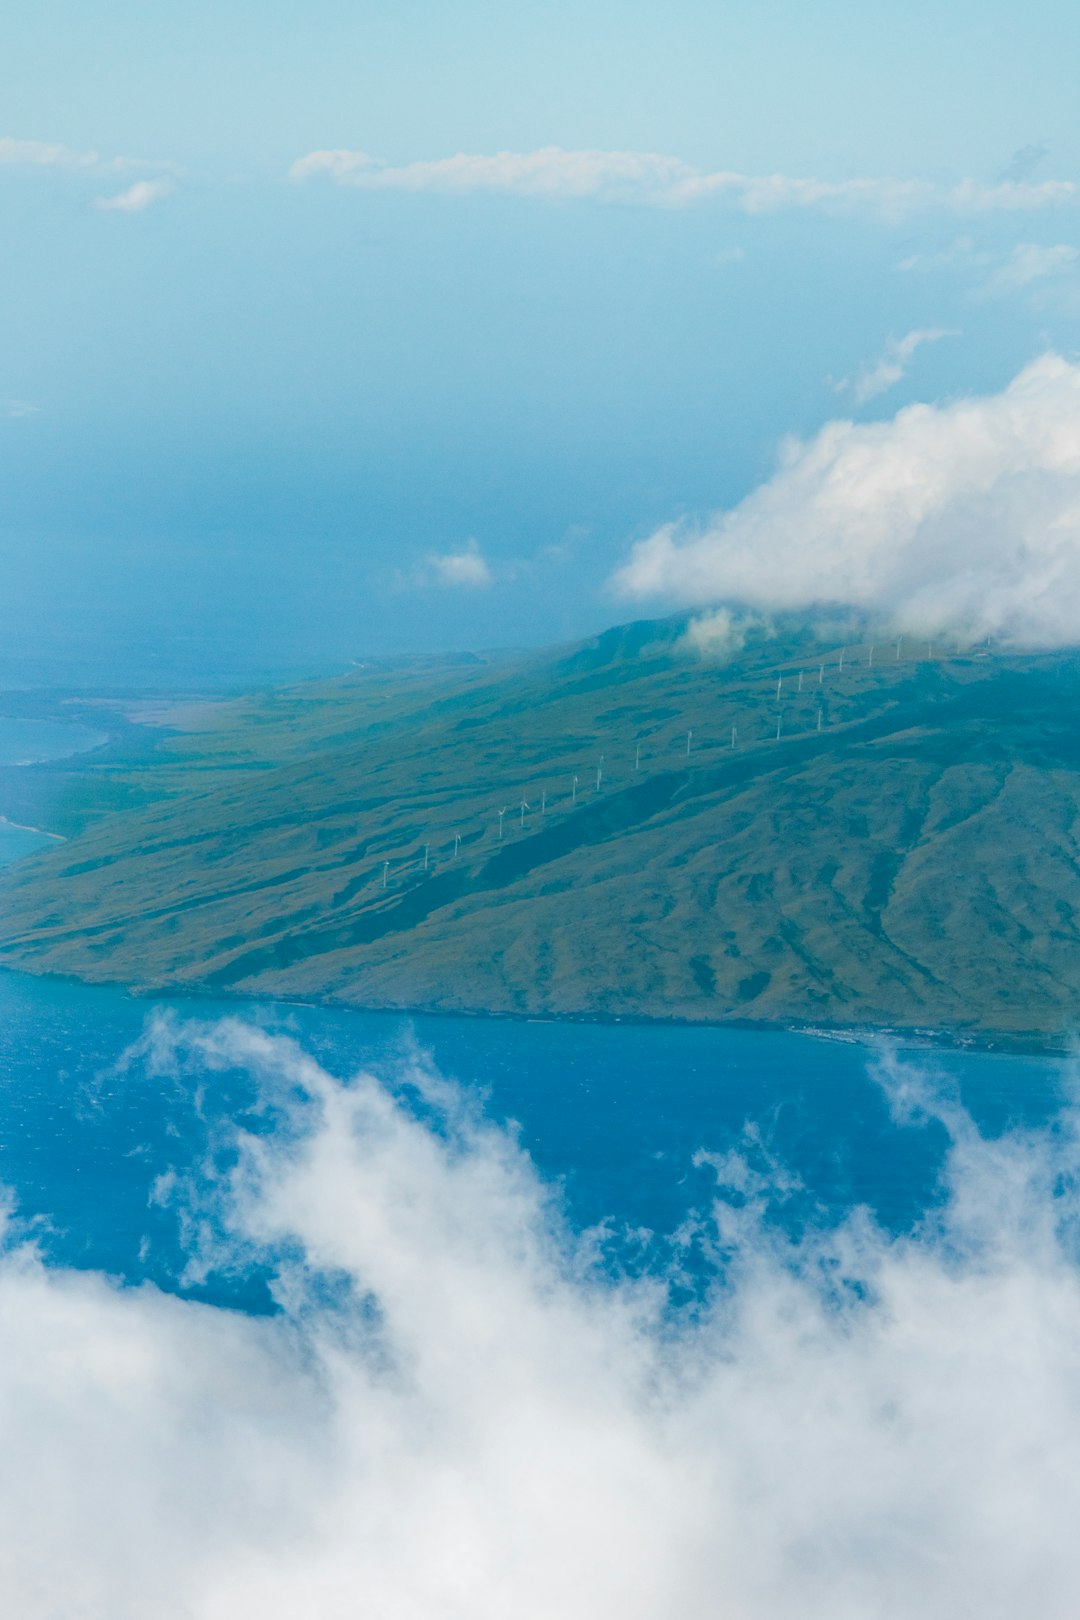 Mountain range photo spot Maui County Haleakalā National Park